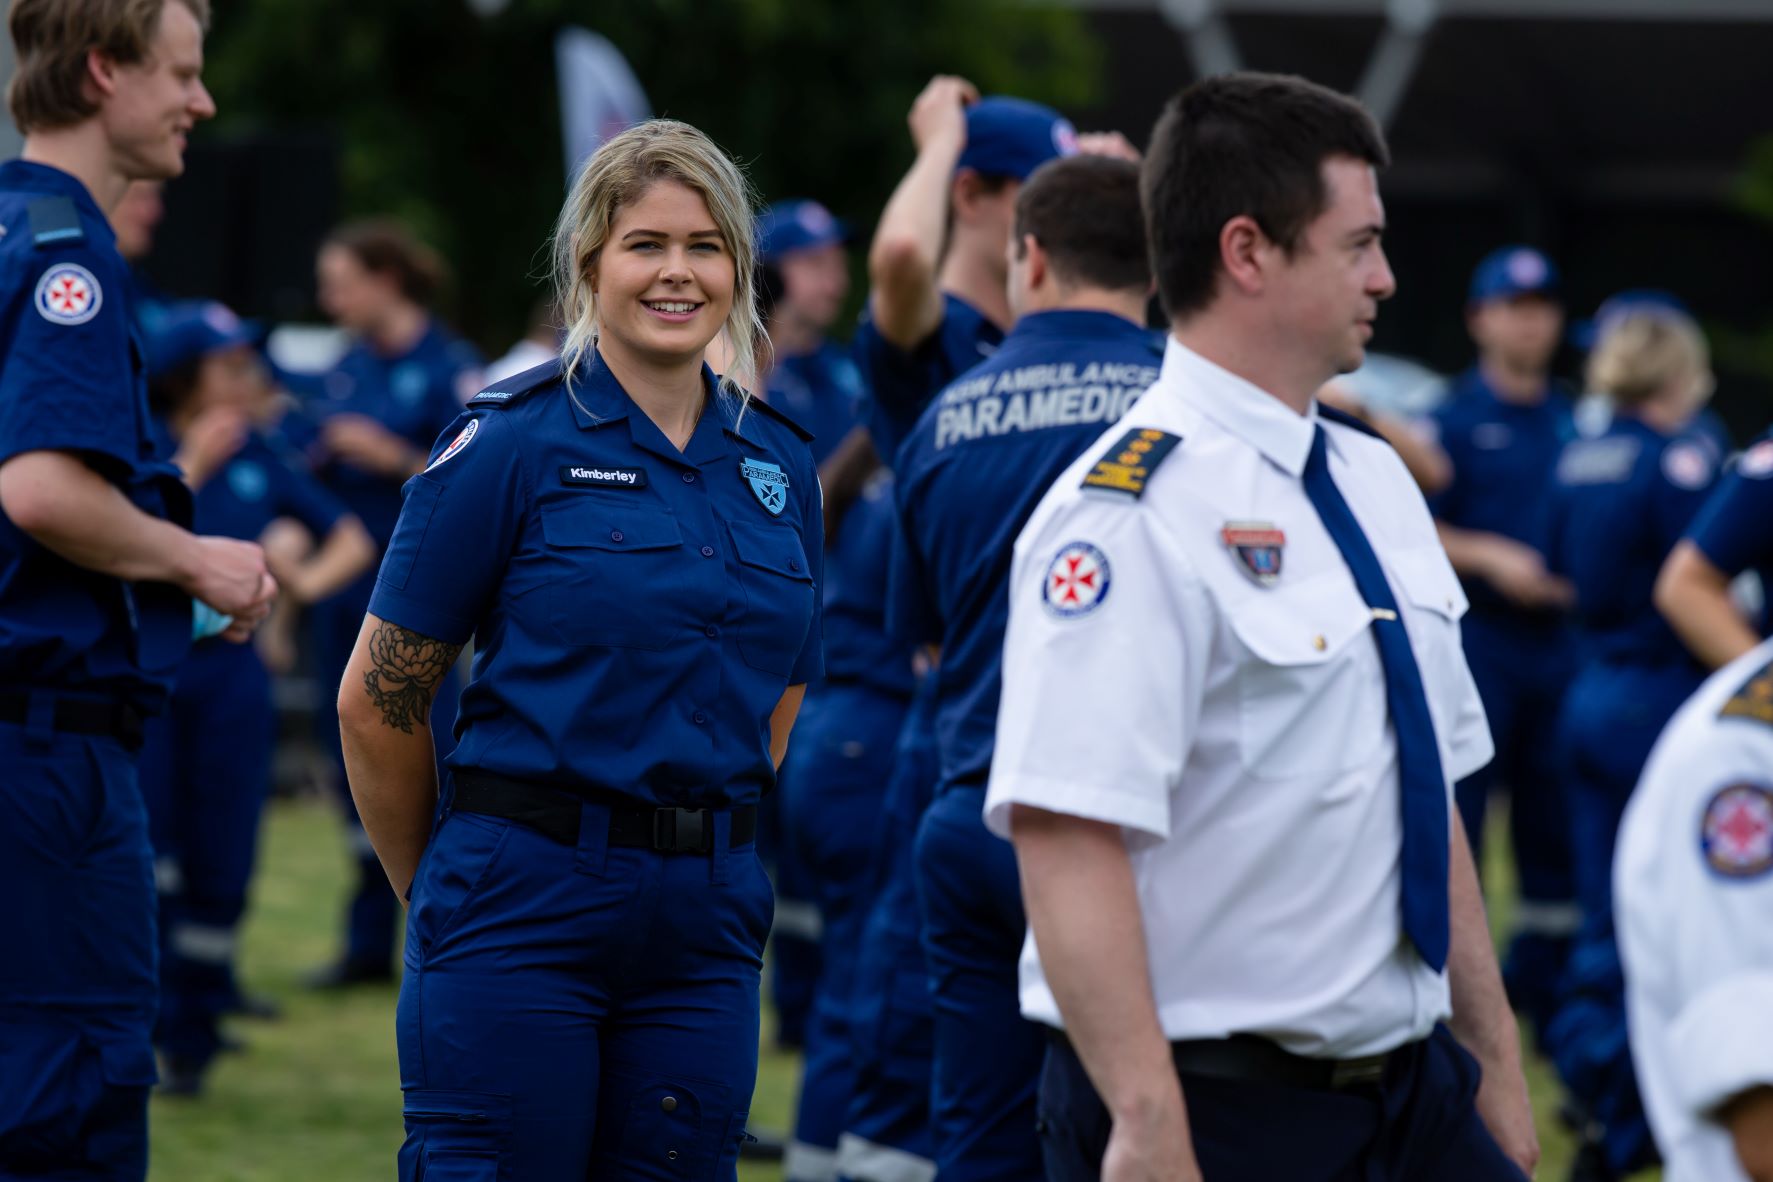 Paramedic Surge Graduation at Homebush